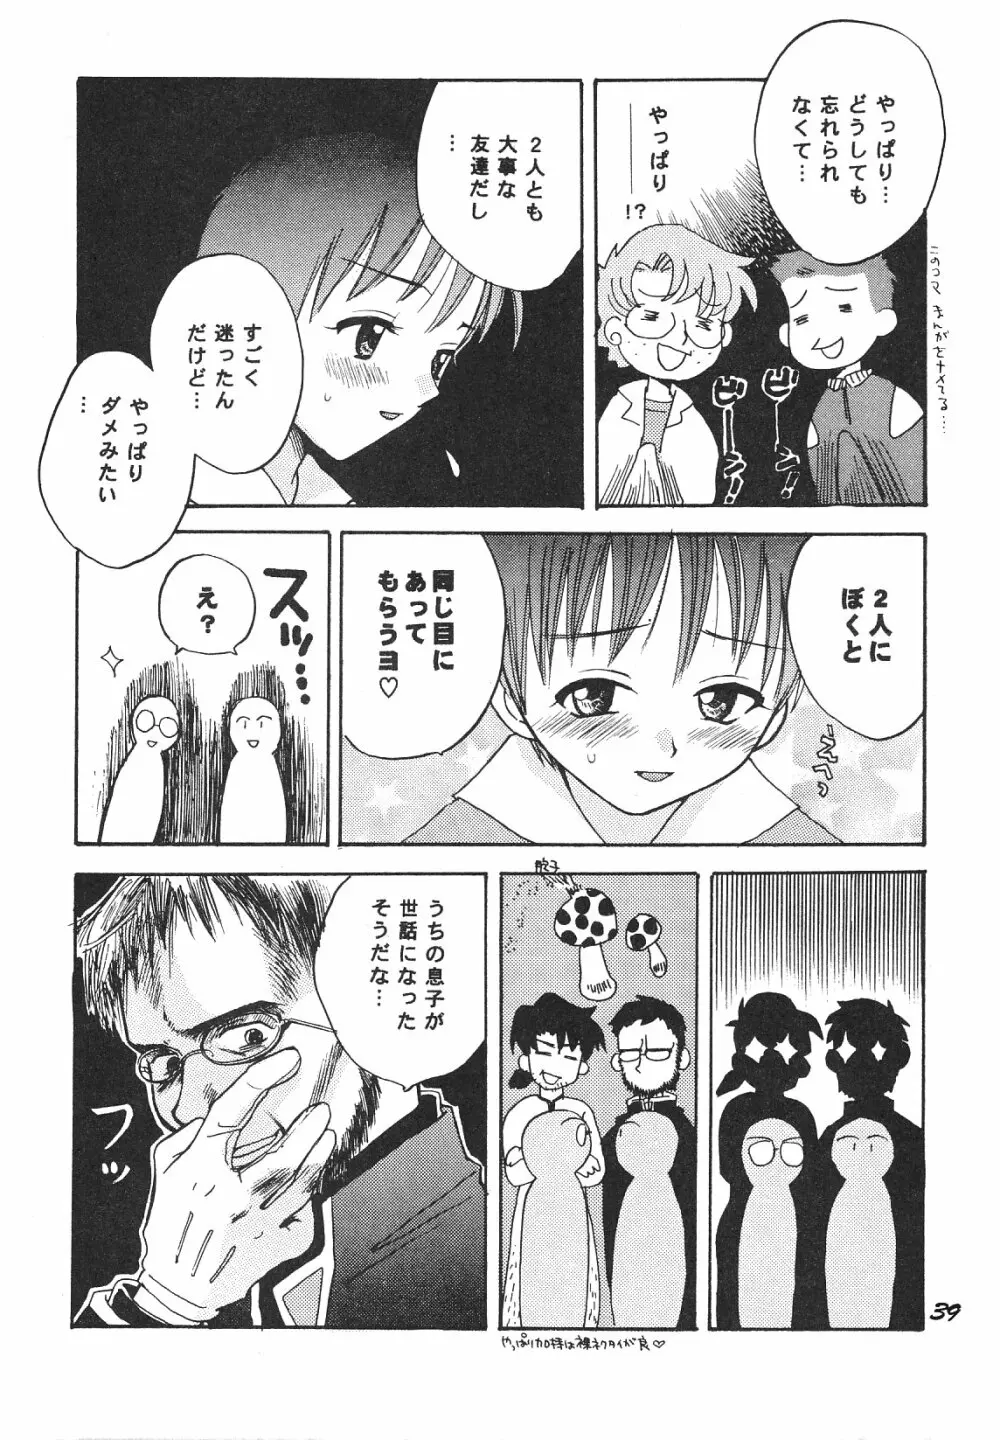 Maniac Juice 女シンジ再録集 ’96-’99 39ページ